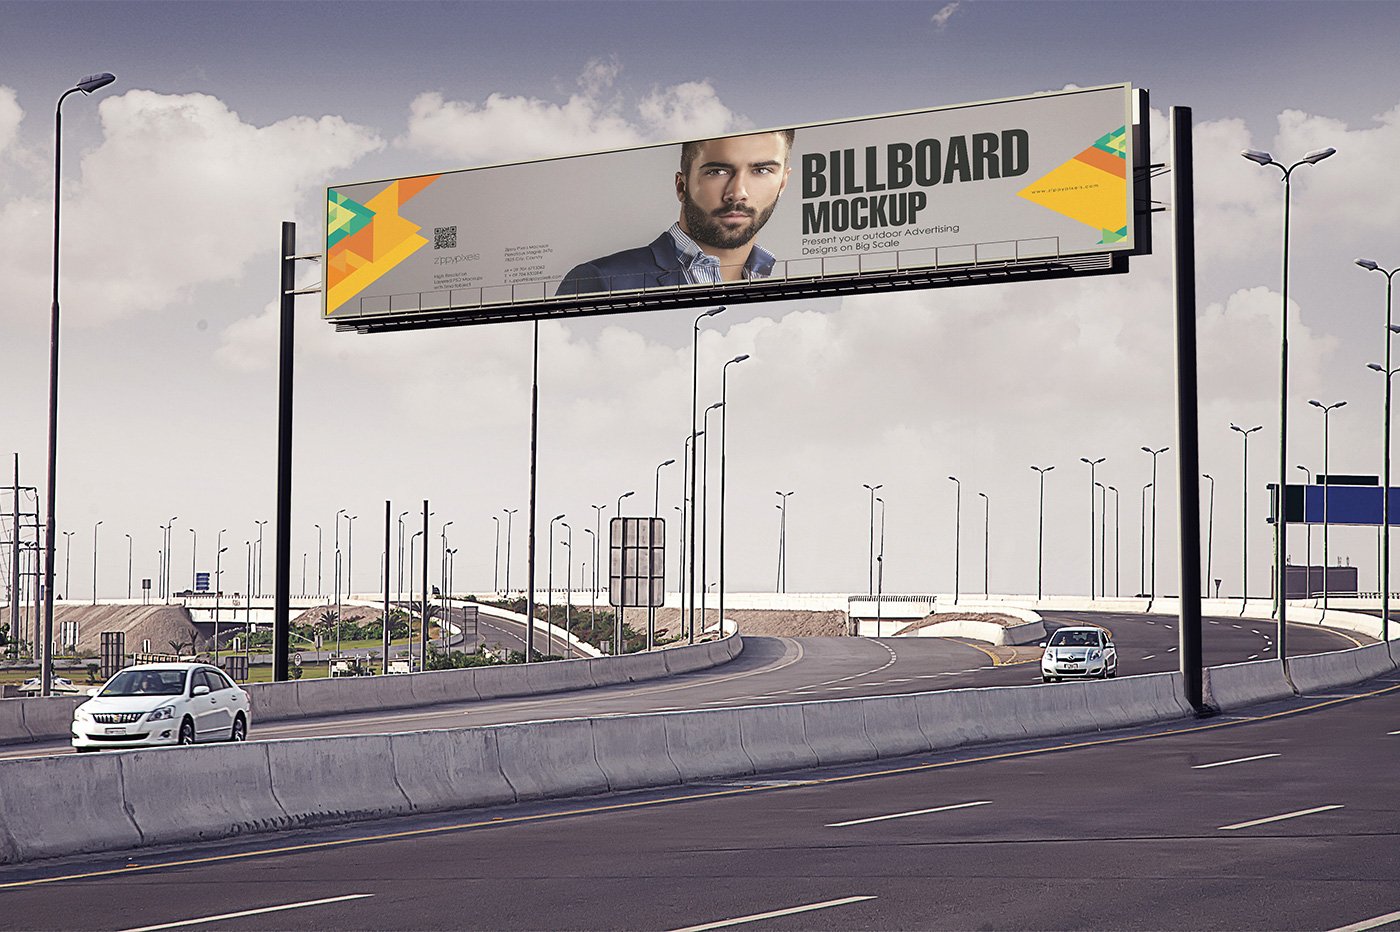 billboard s mockup vol 1 12 884